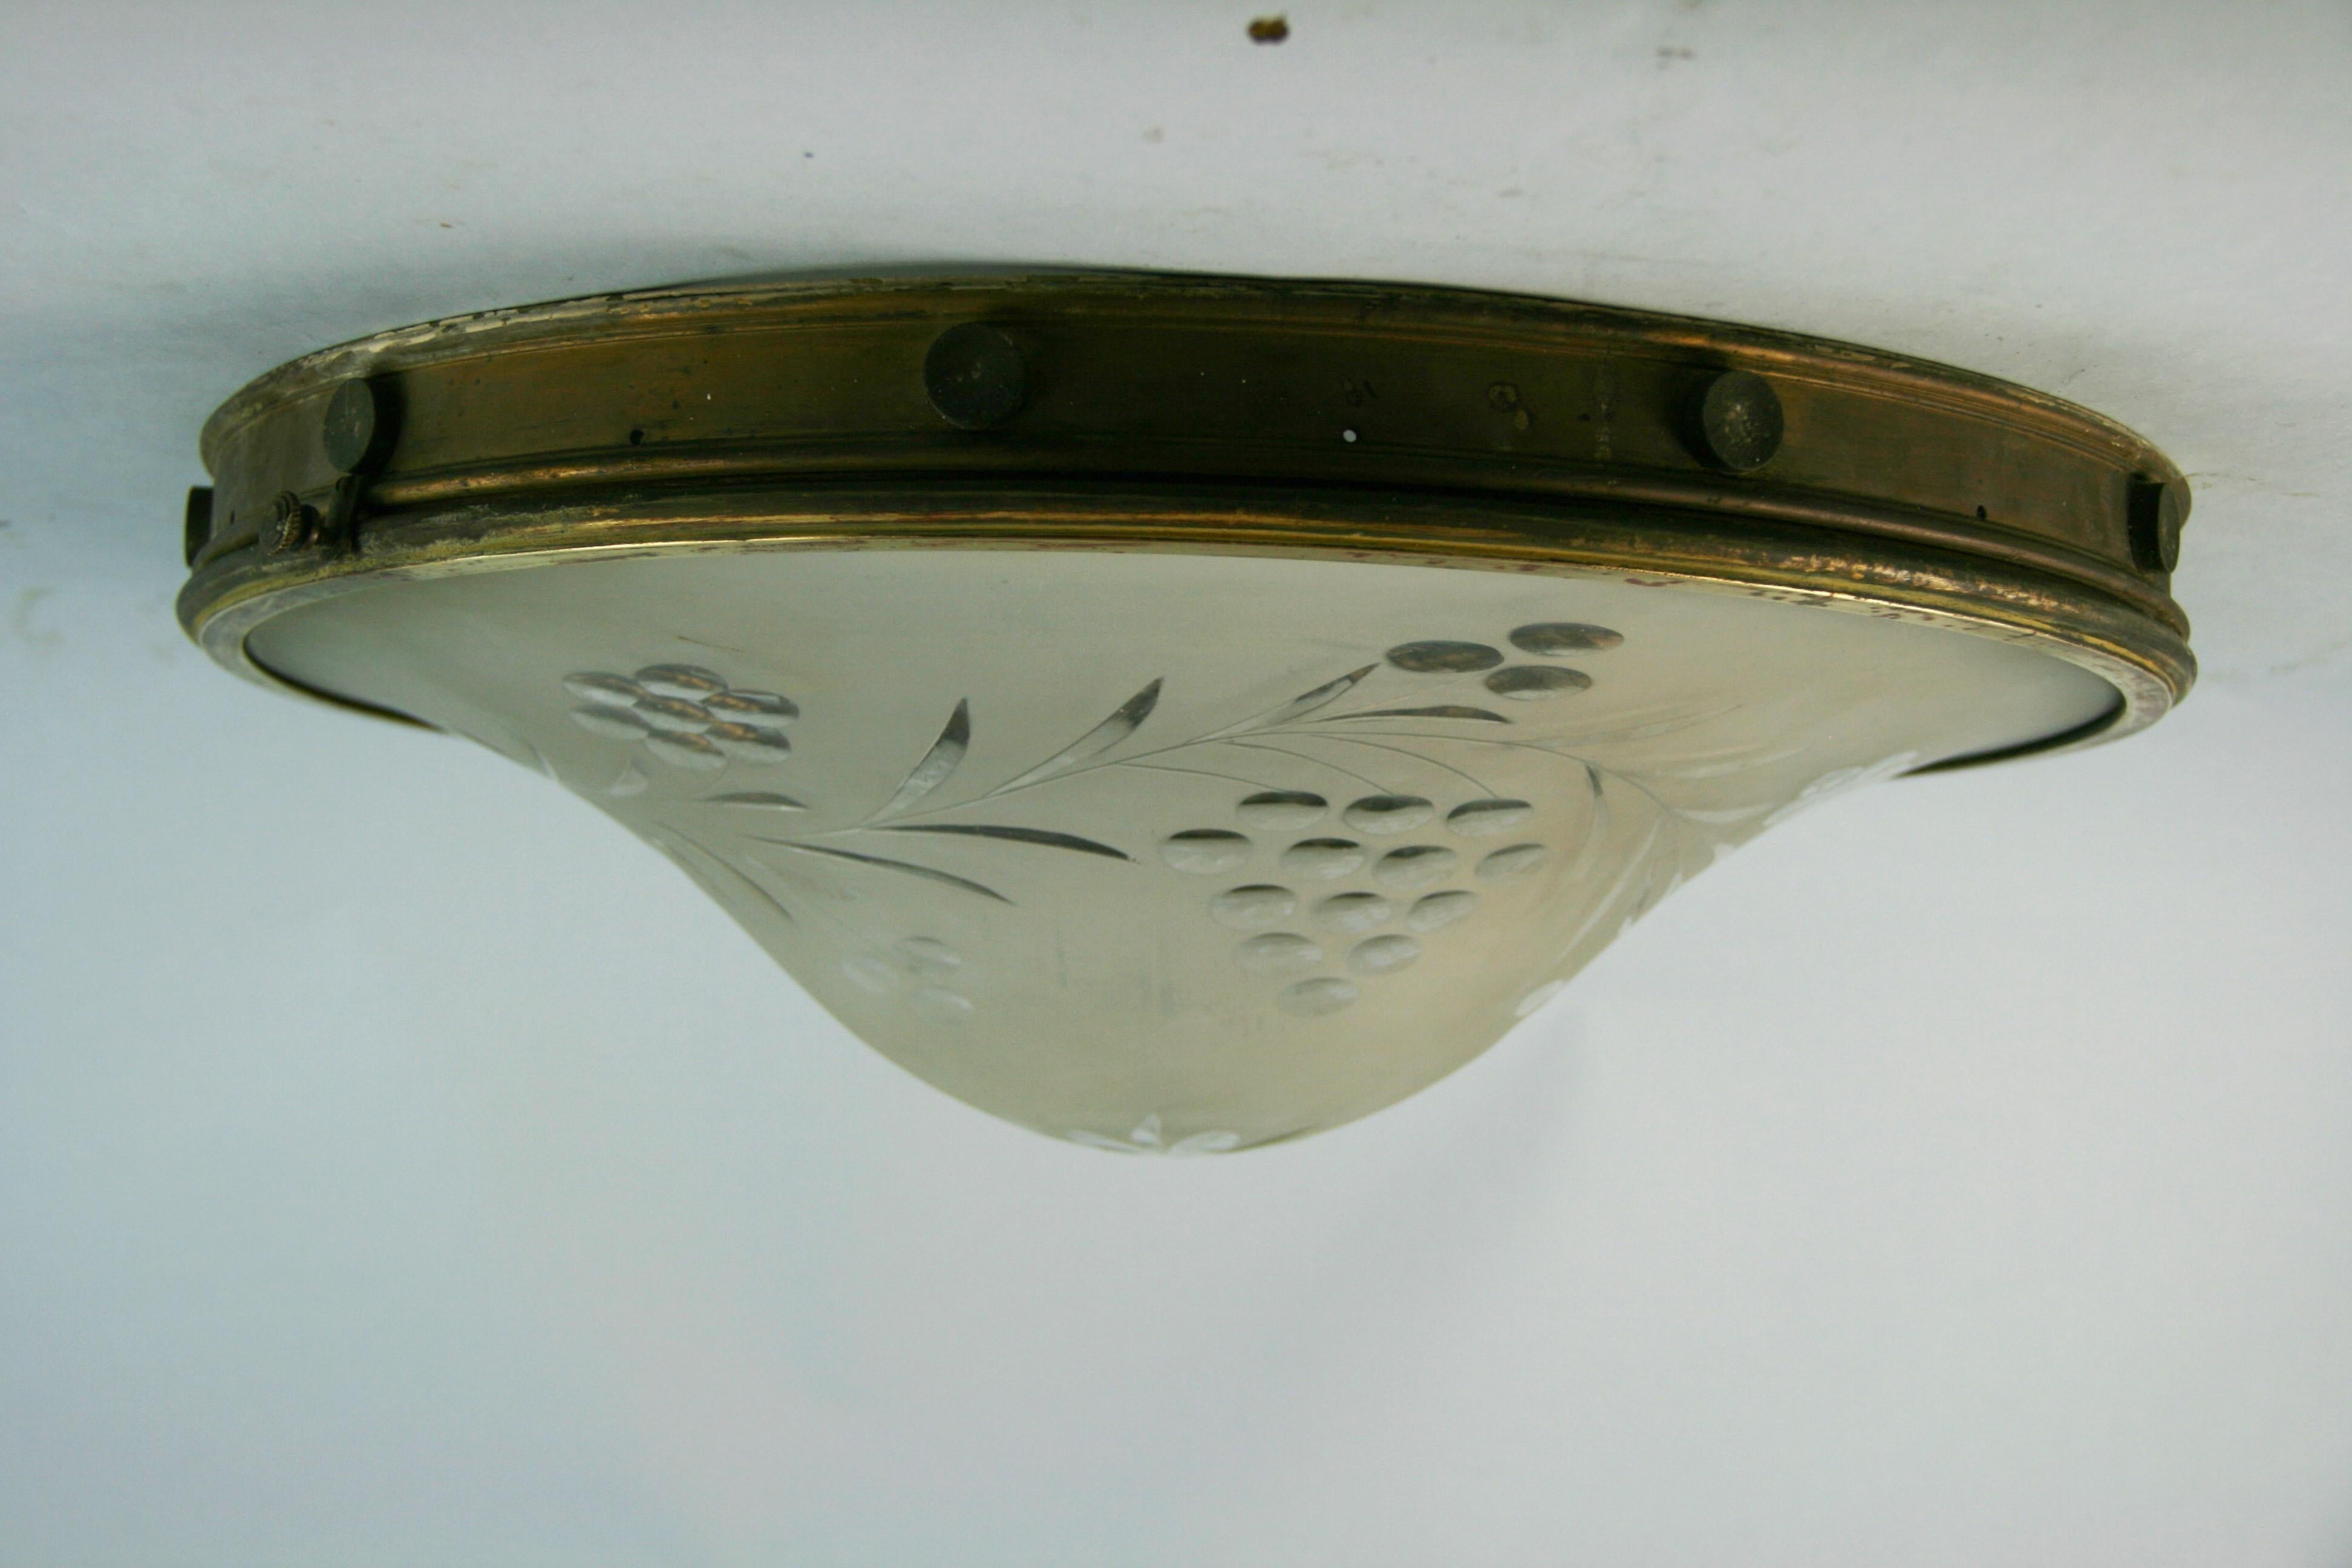 3-815 Florales mattiertes Raddarmglas mit Scharnierdeckel
Für 3 Edison-Glühbirnen geeignet
Muss neu verkabelt werden.